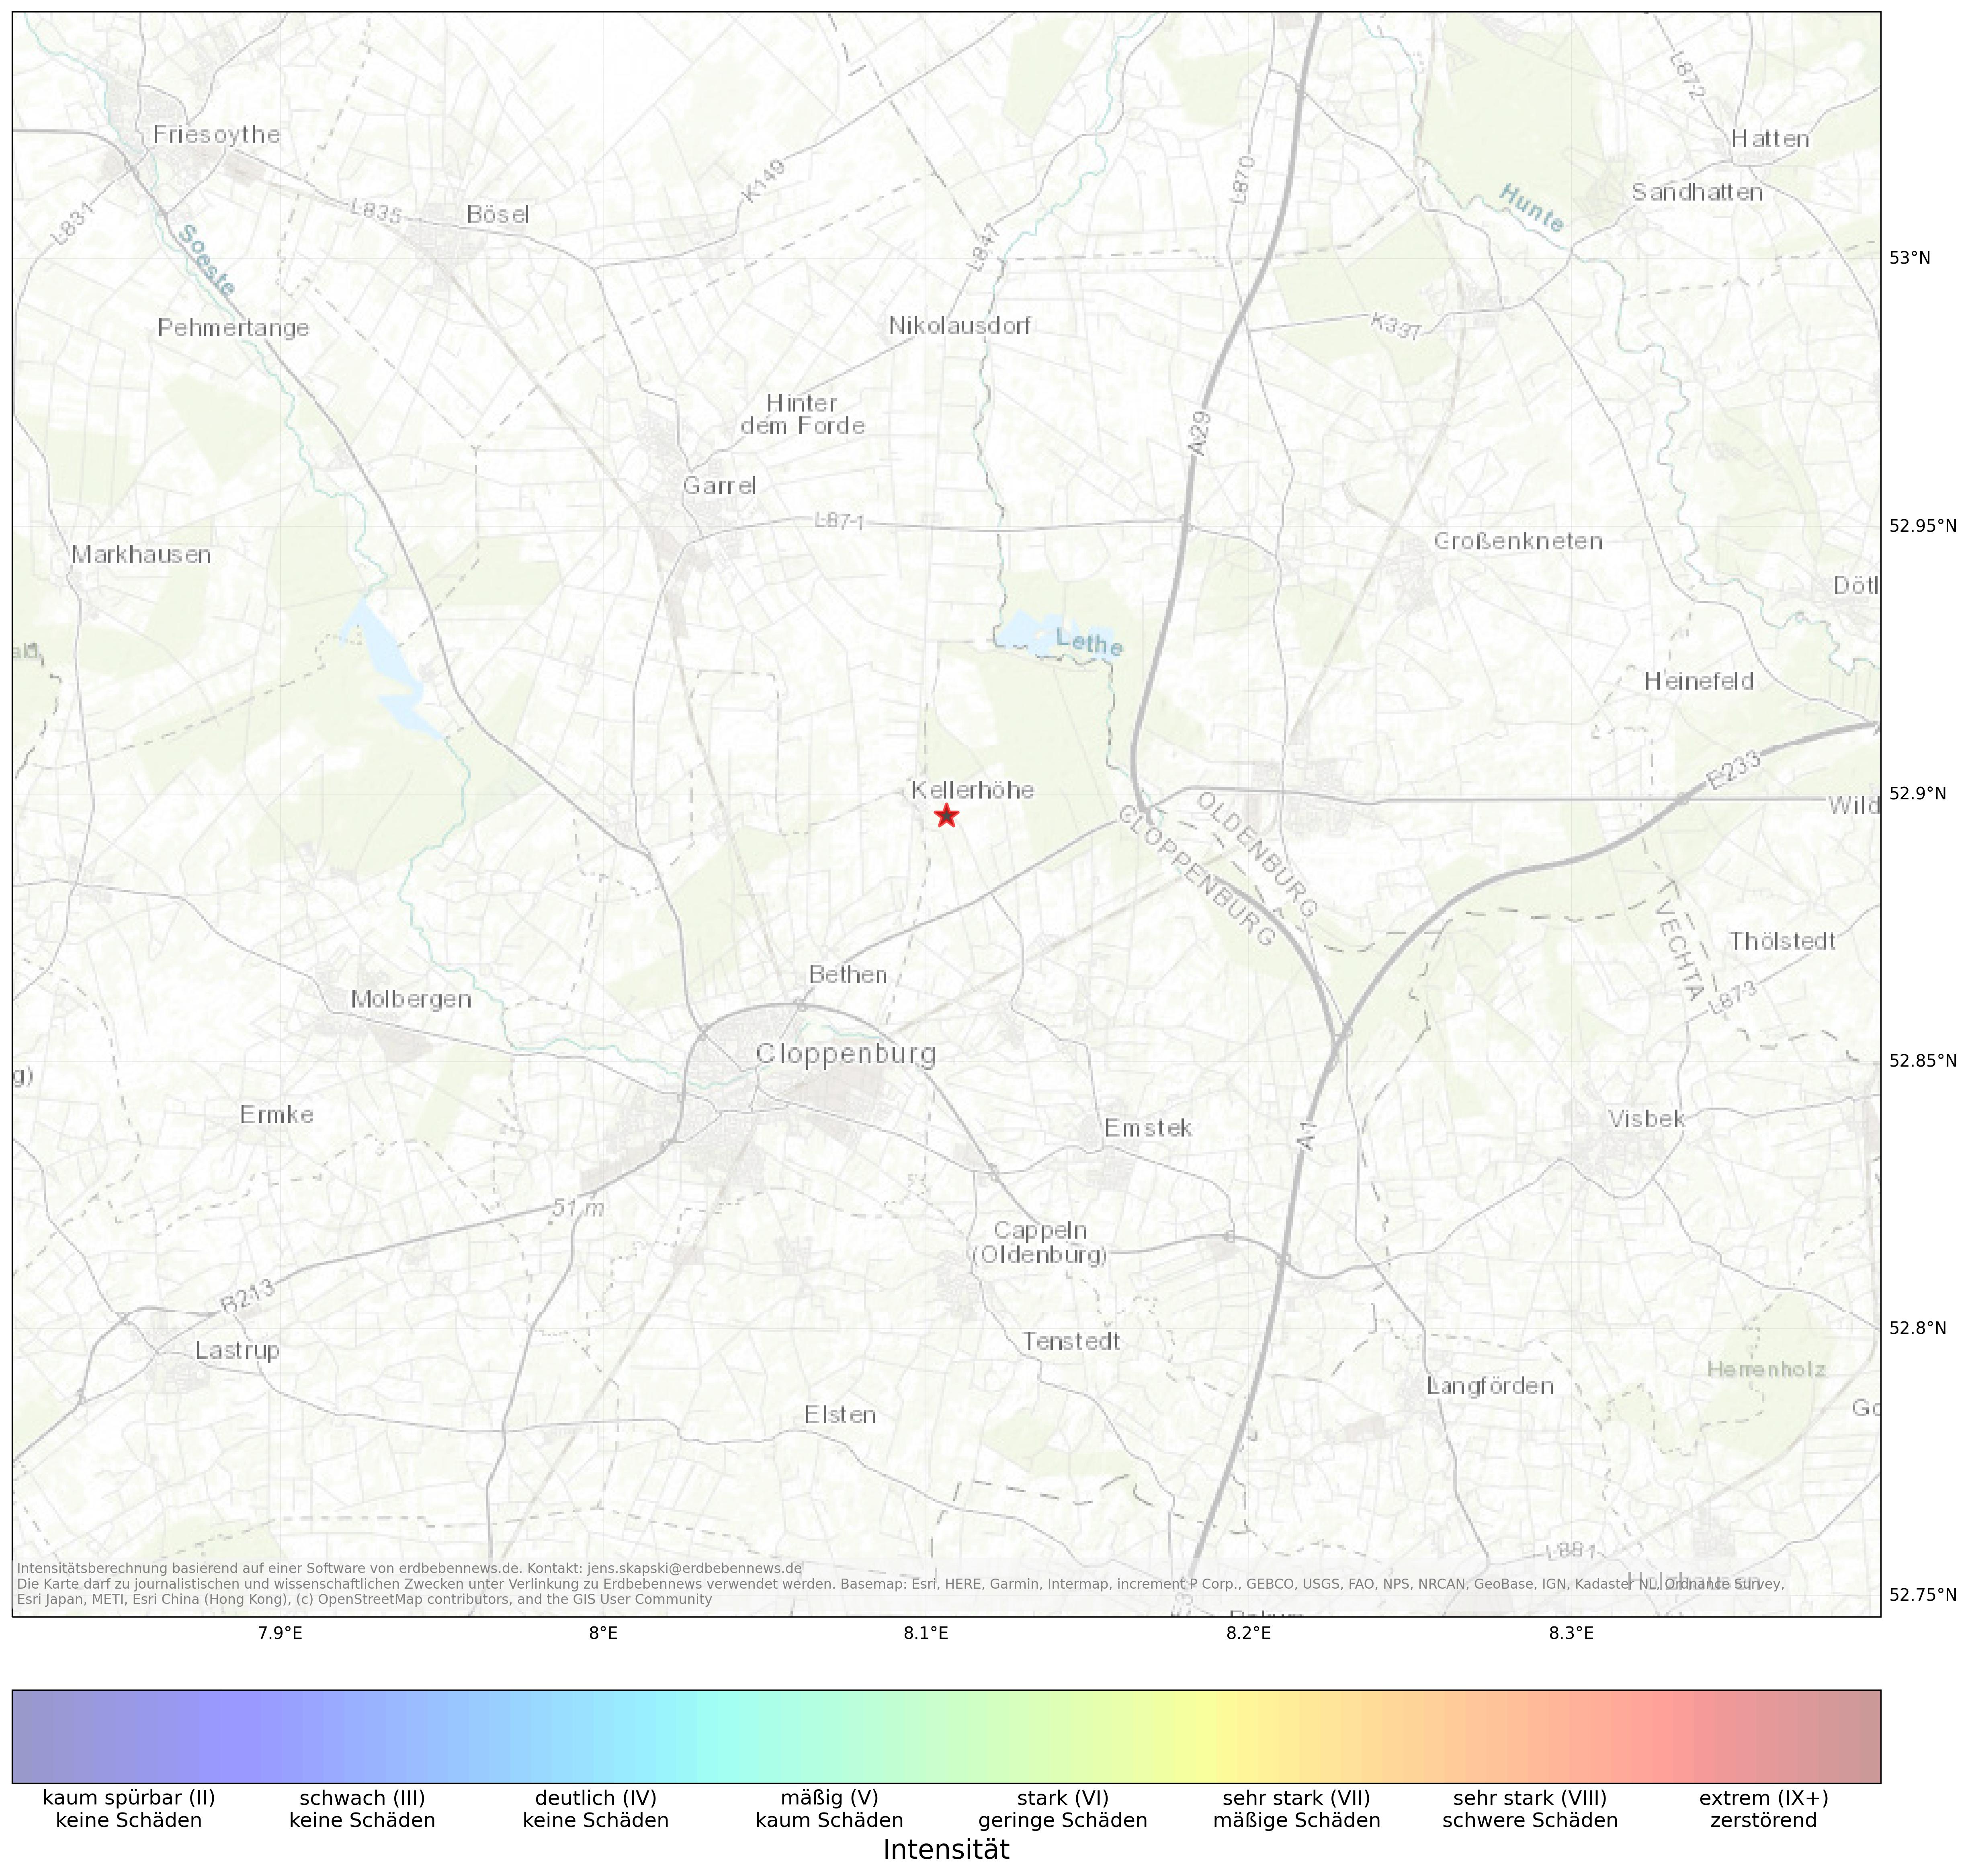 Berechnete Intensität (ShakeMap) des Erdbebens der Stärke 1.3 am 12. April, 23:54 in Deutschland